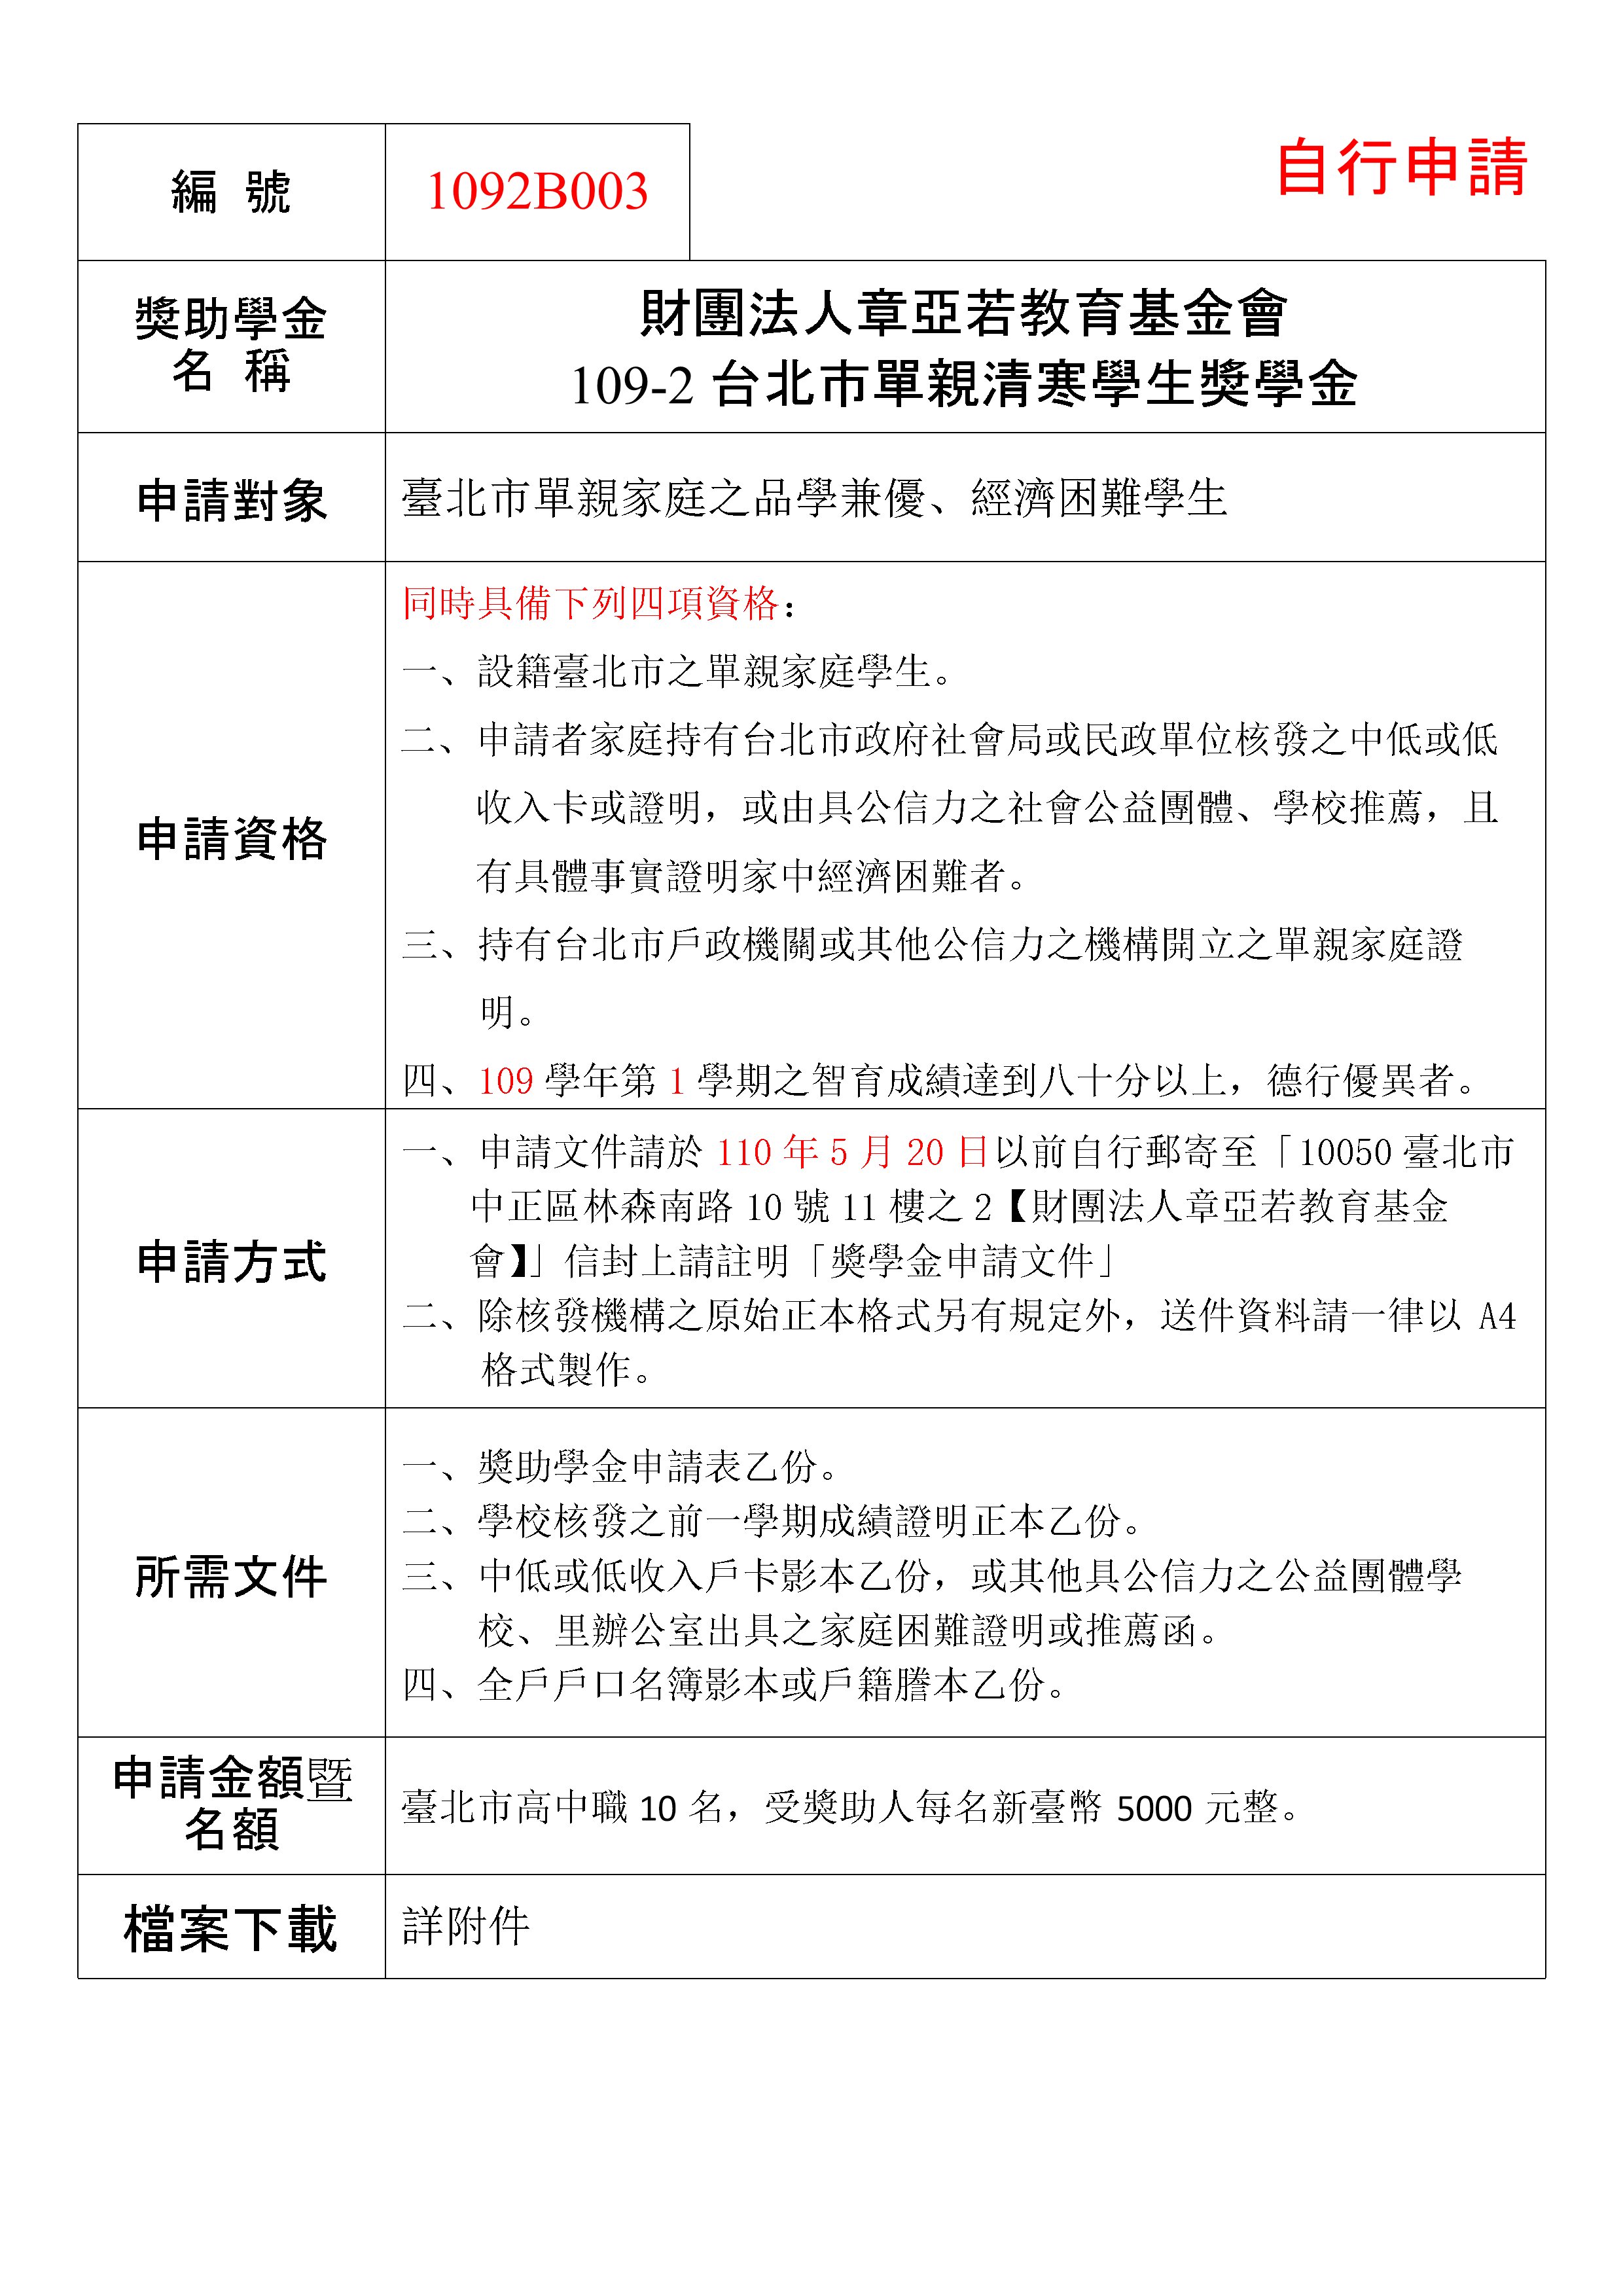 章亞若台北市單親清寒學生獎學金公告